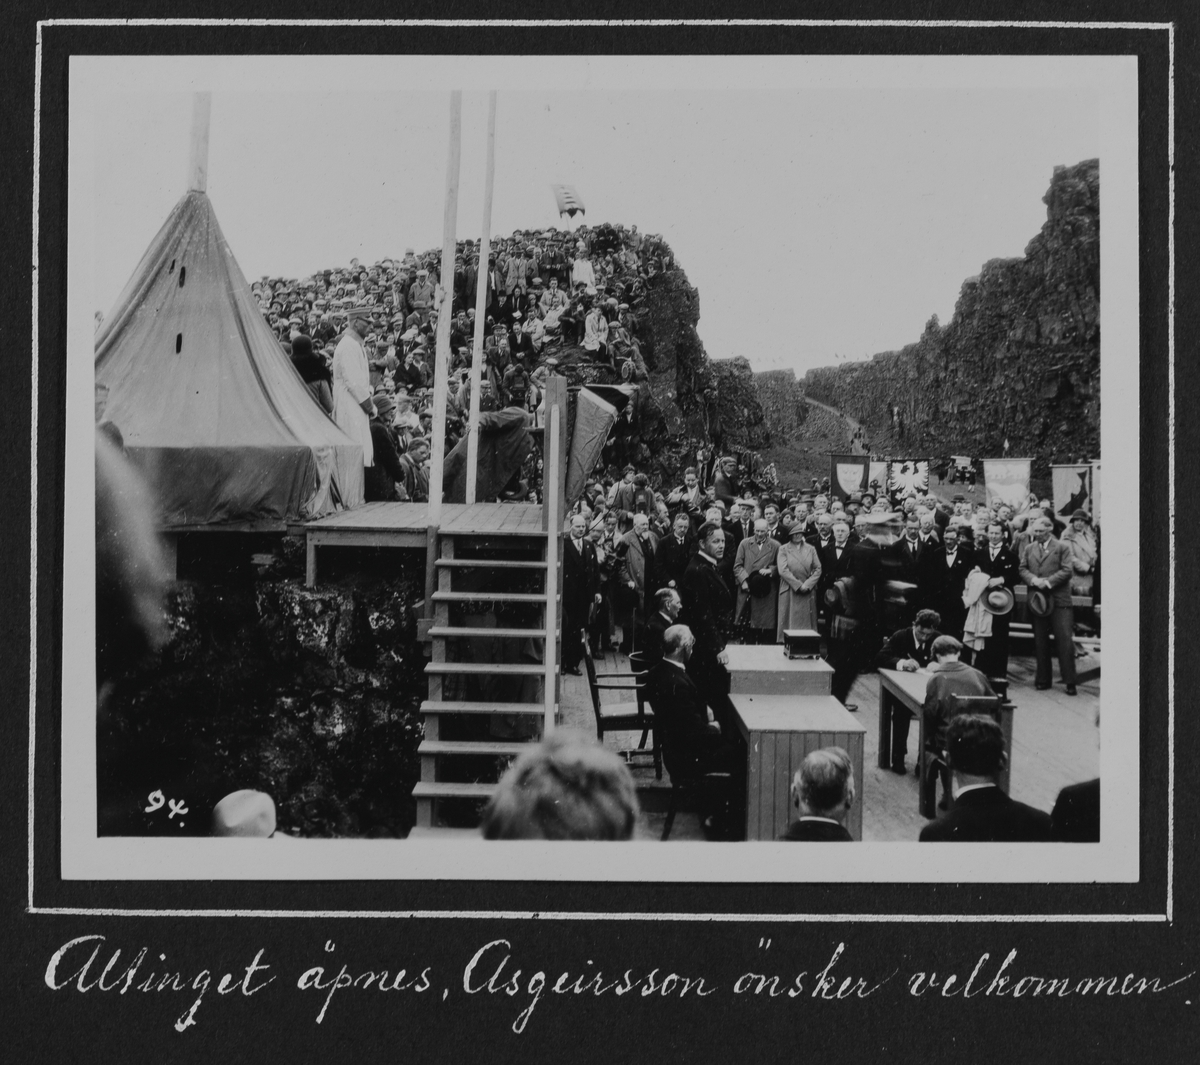 Fra 1000 årsfesten for Alltinget på Island i 1930. Alltinget ånes, Asgeirsson ønsker velkommen.